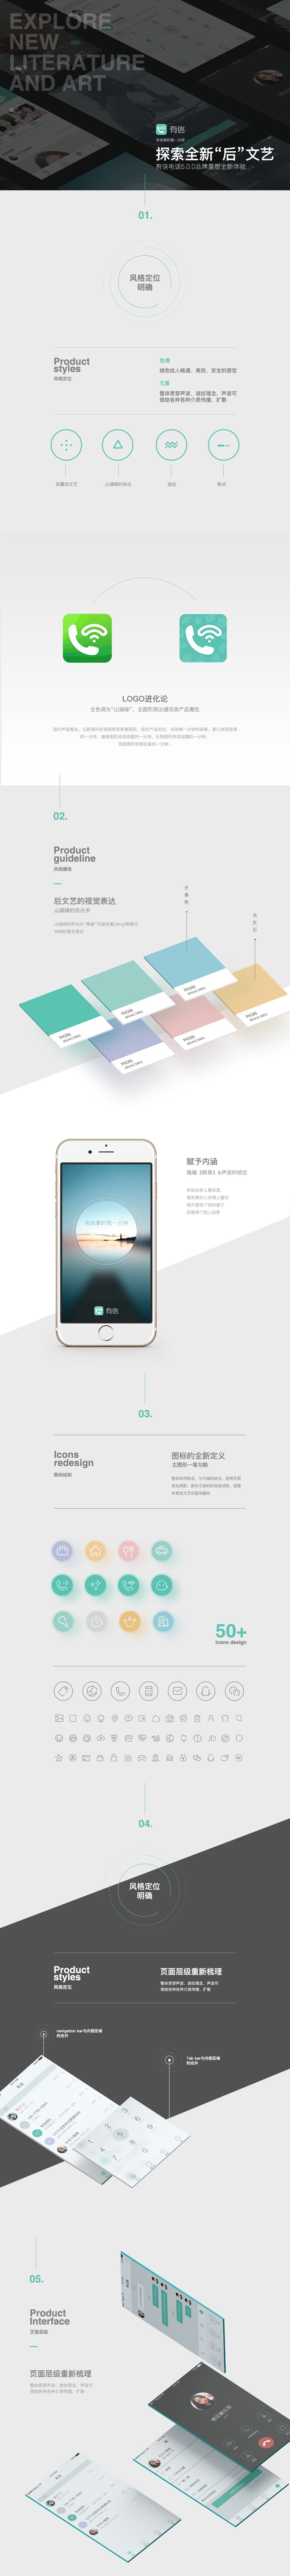 手机客户端用户体验opgg手机客户端中文-第1张图片-太平洋在线下载